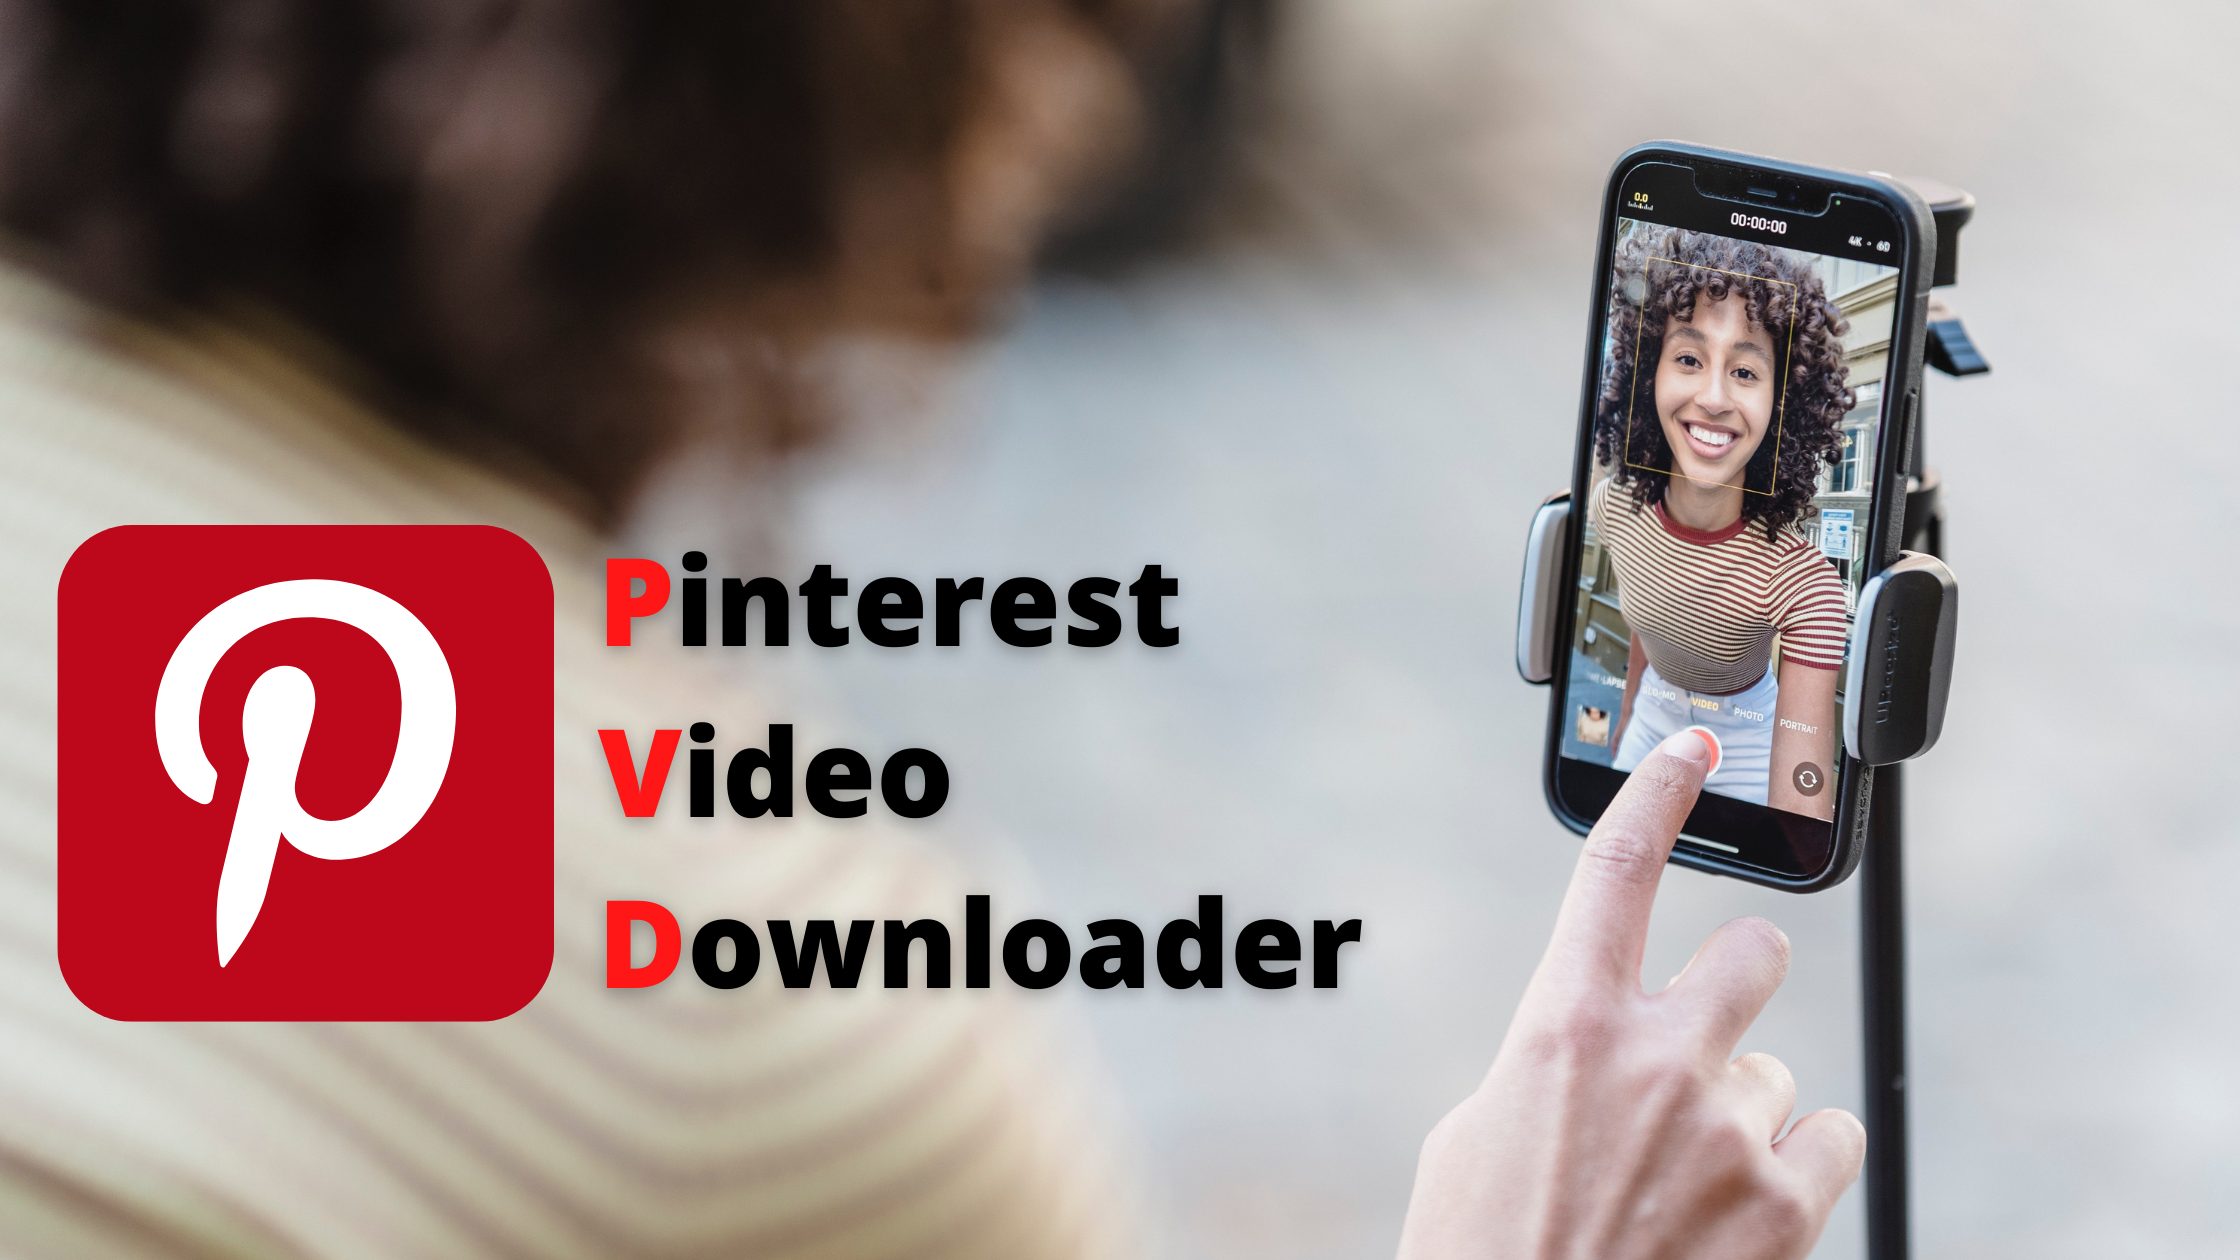 pinterest video downloader 4k